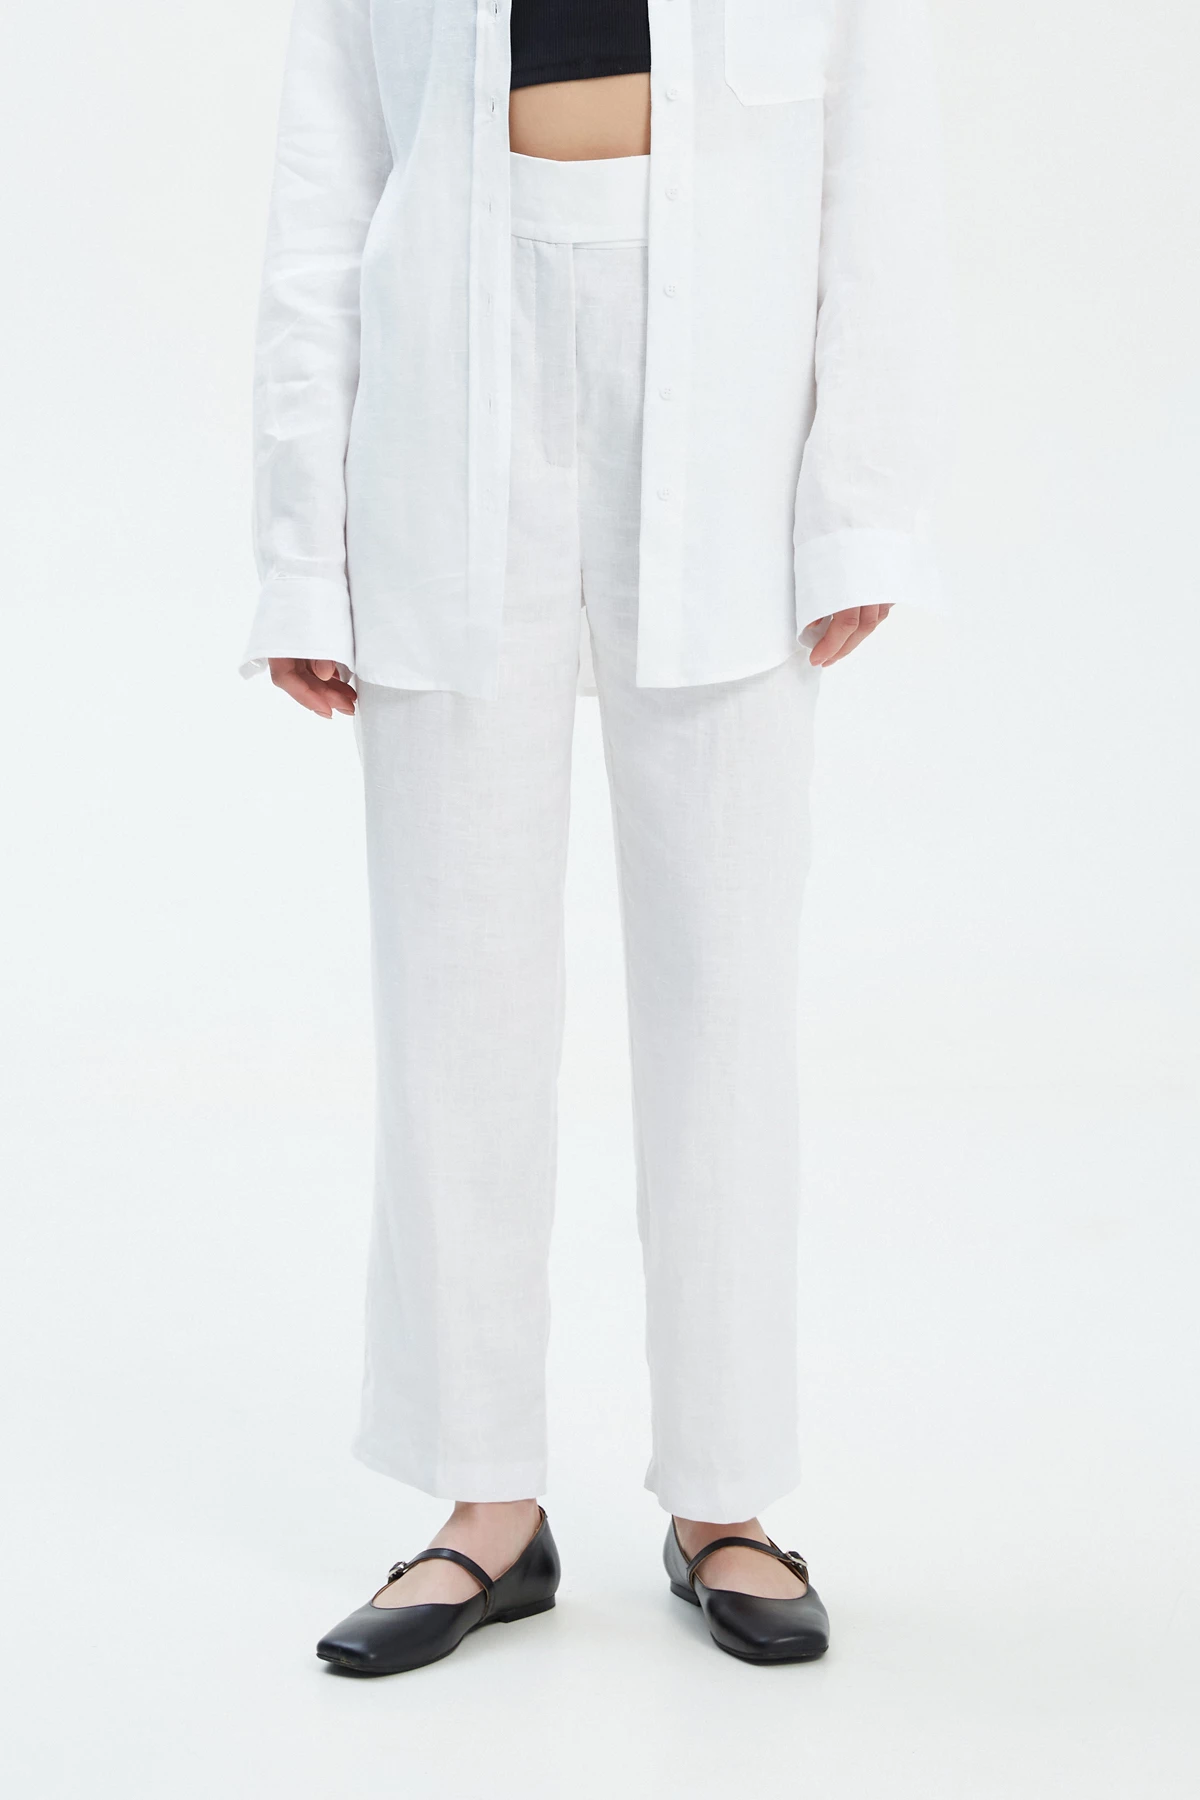 Білі прямі вкорочені штани зі 100% льону, фото 3